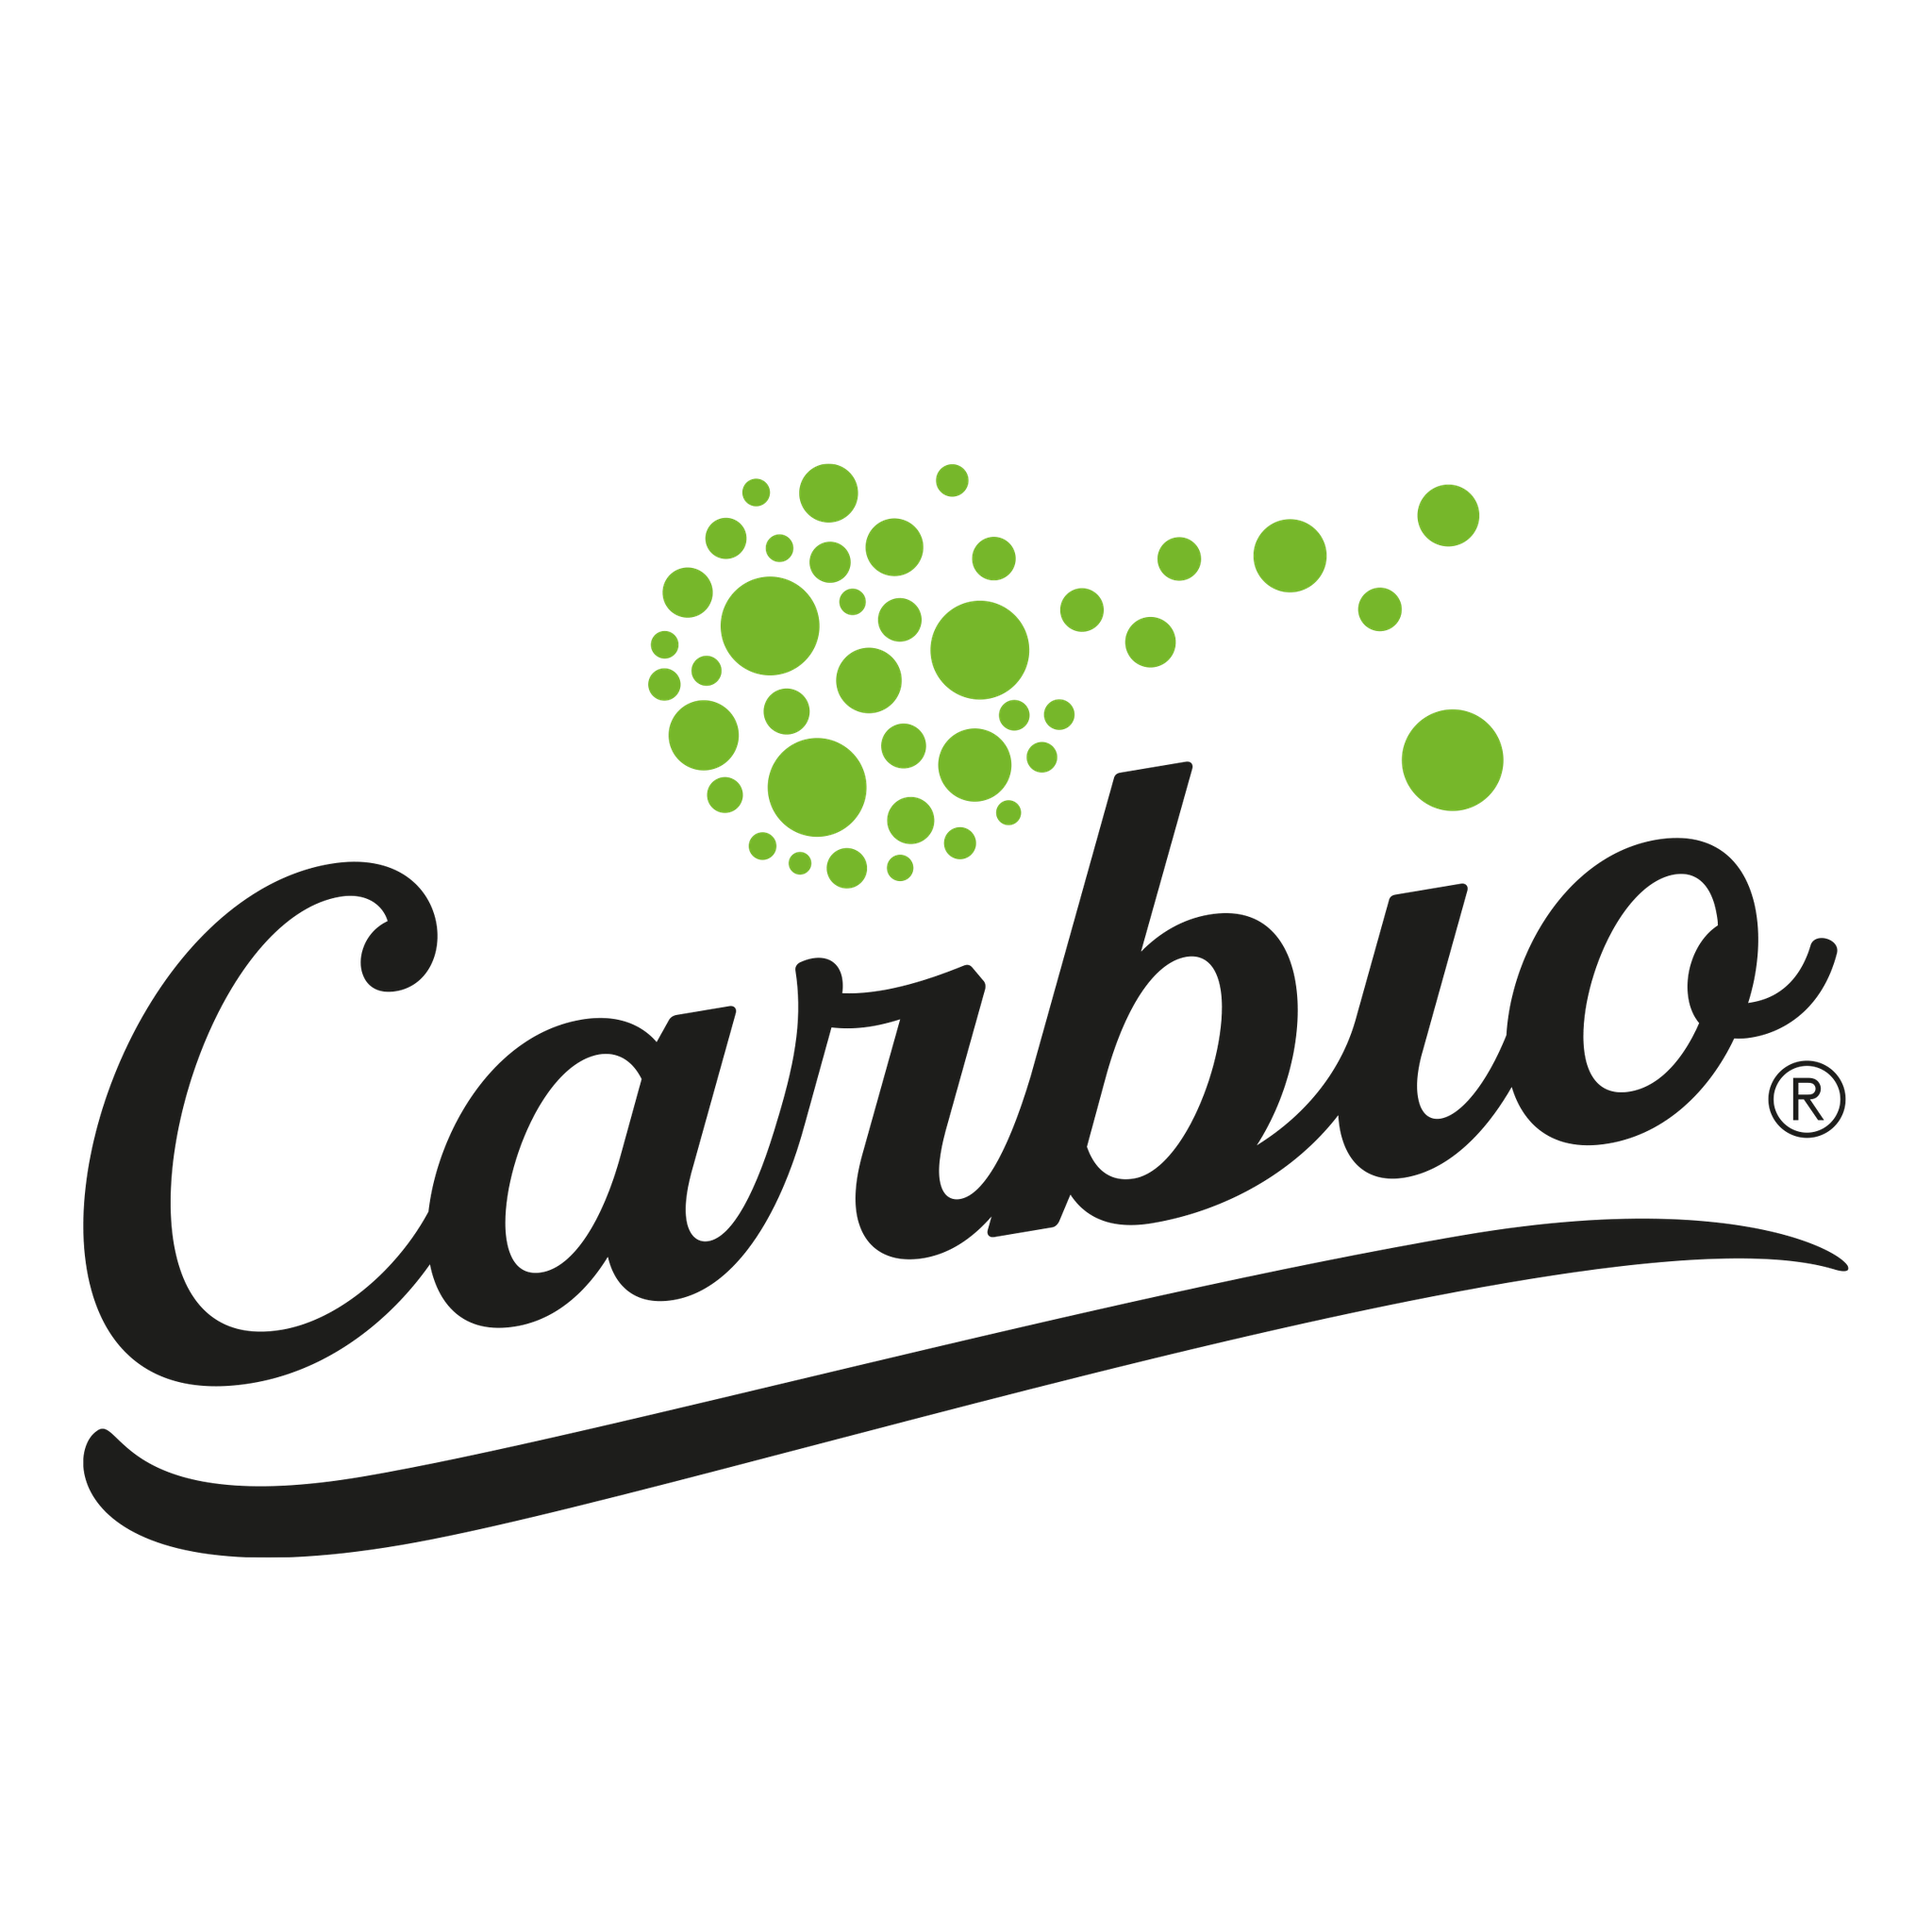 carbio-logo-1